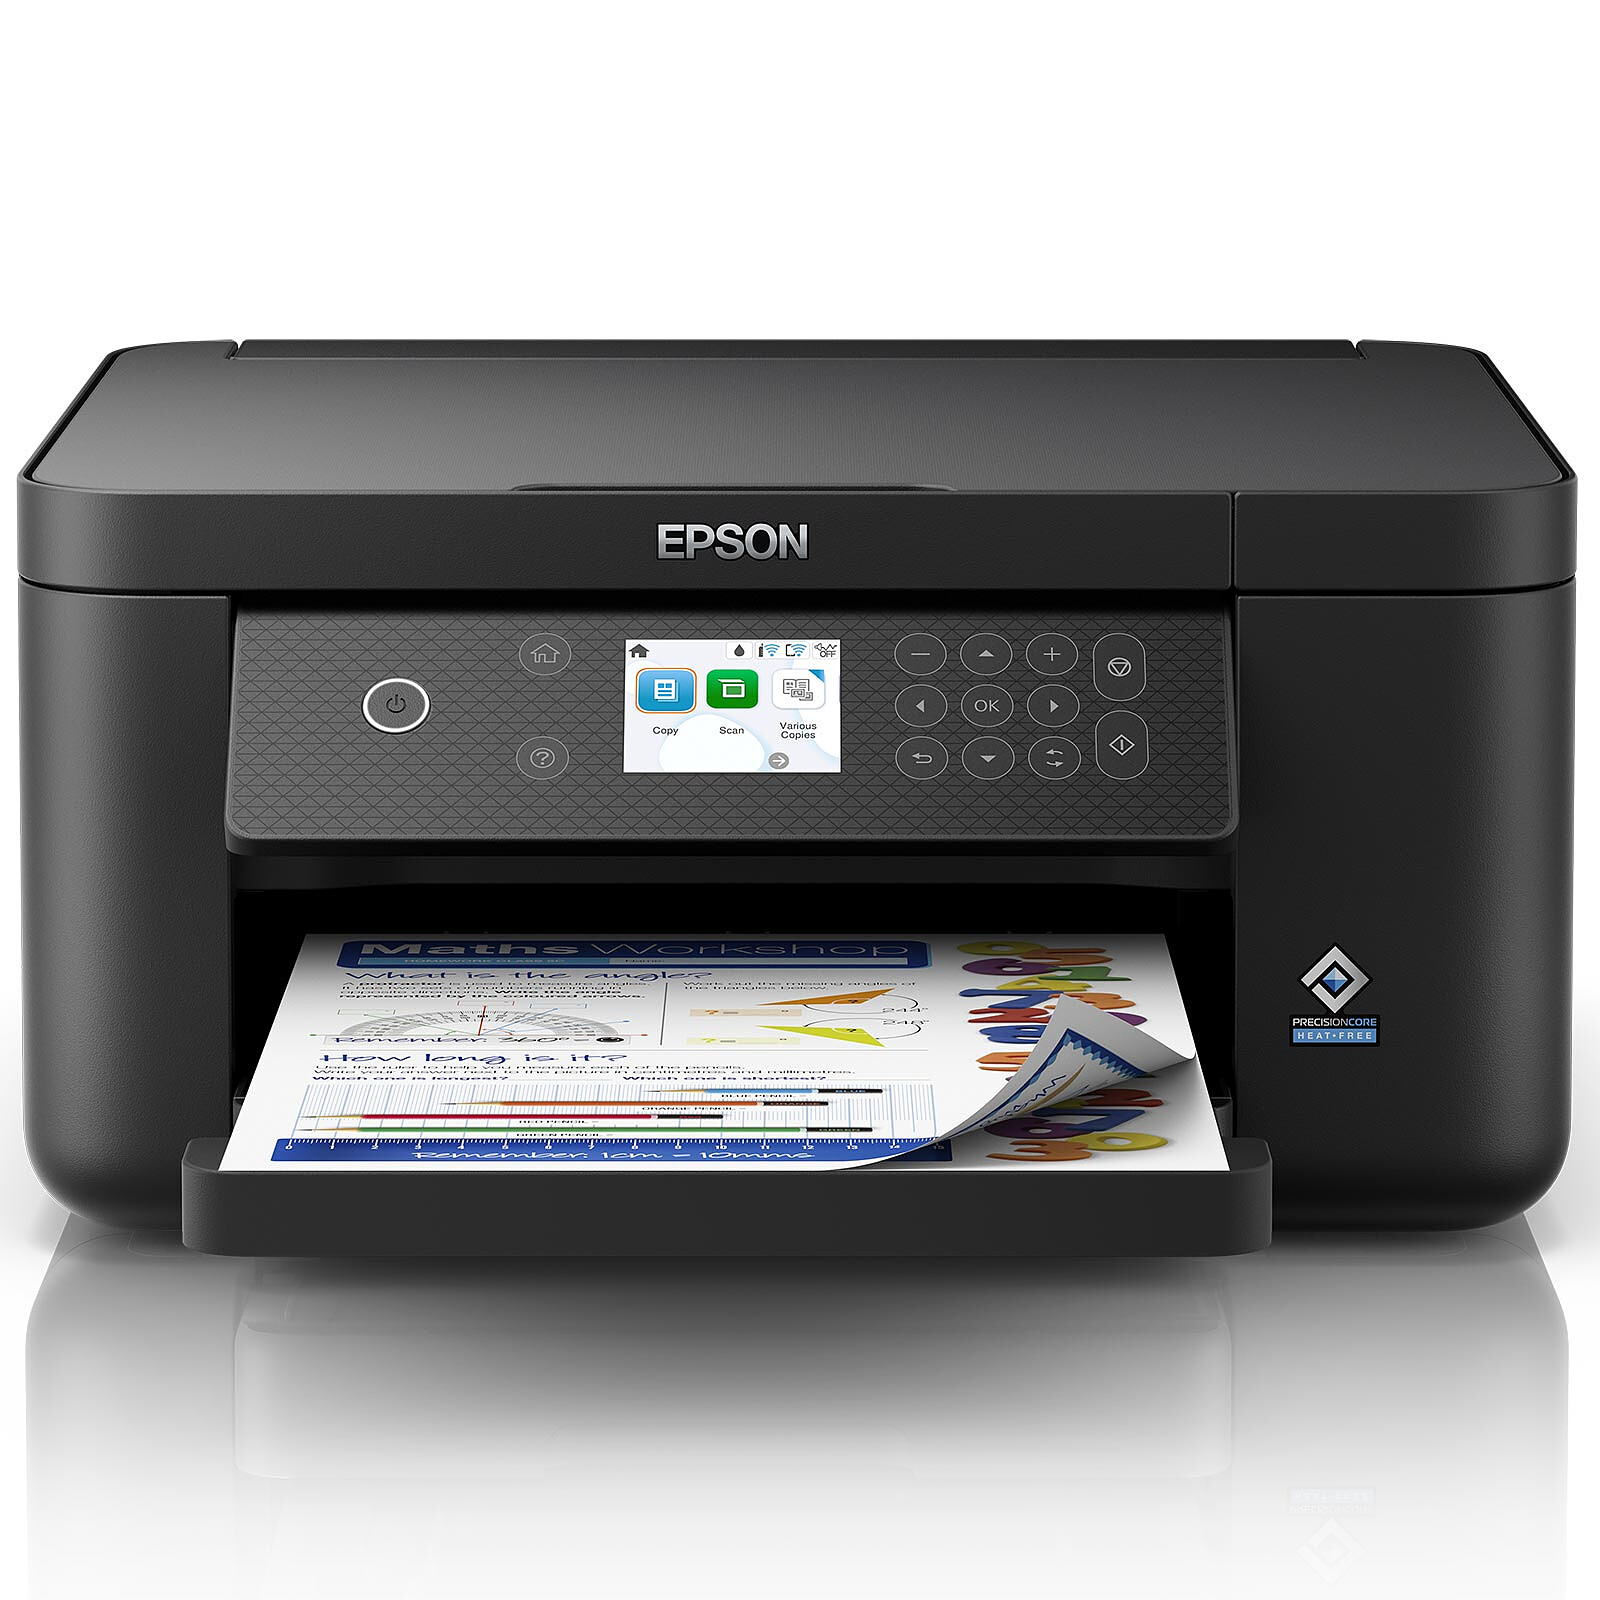 Epson Expression Home XP-3200 Imprimante multifonction – acheter